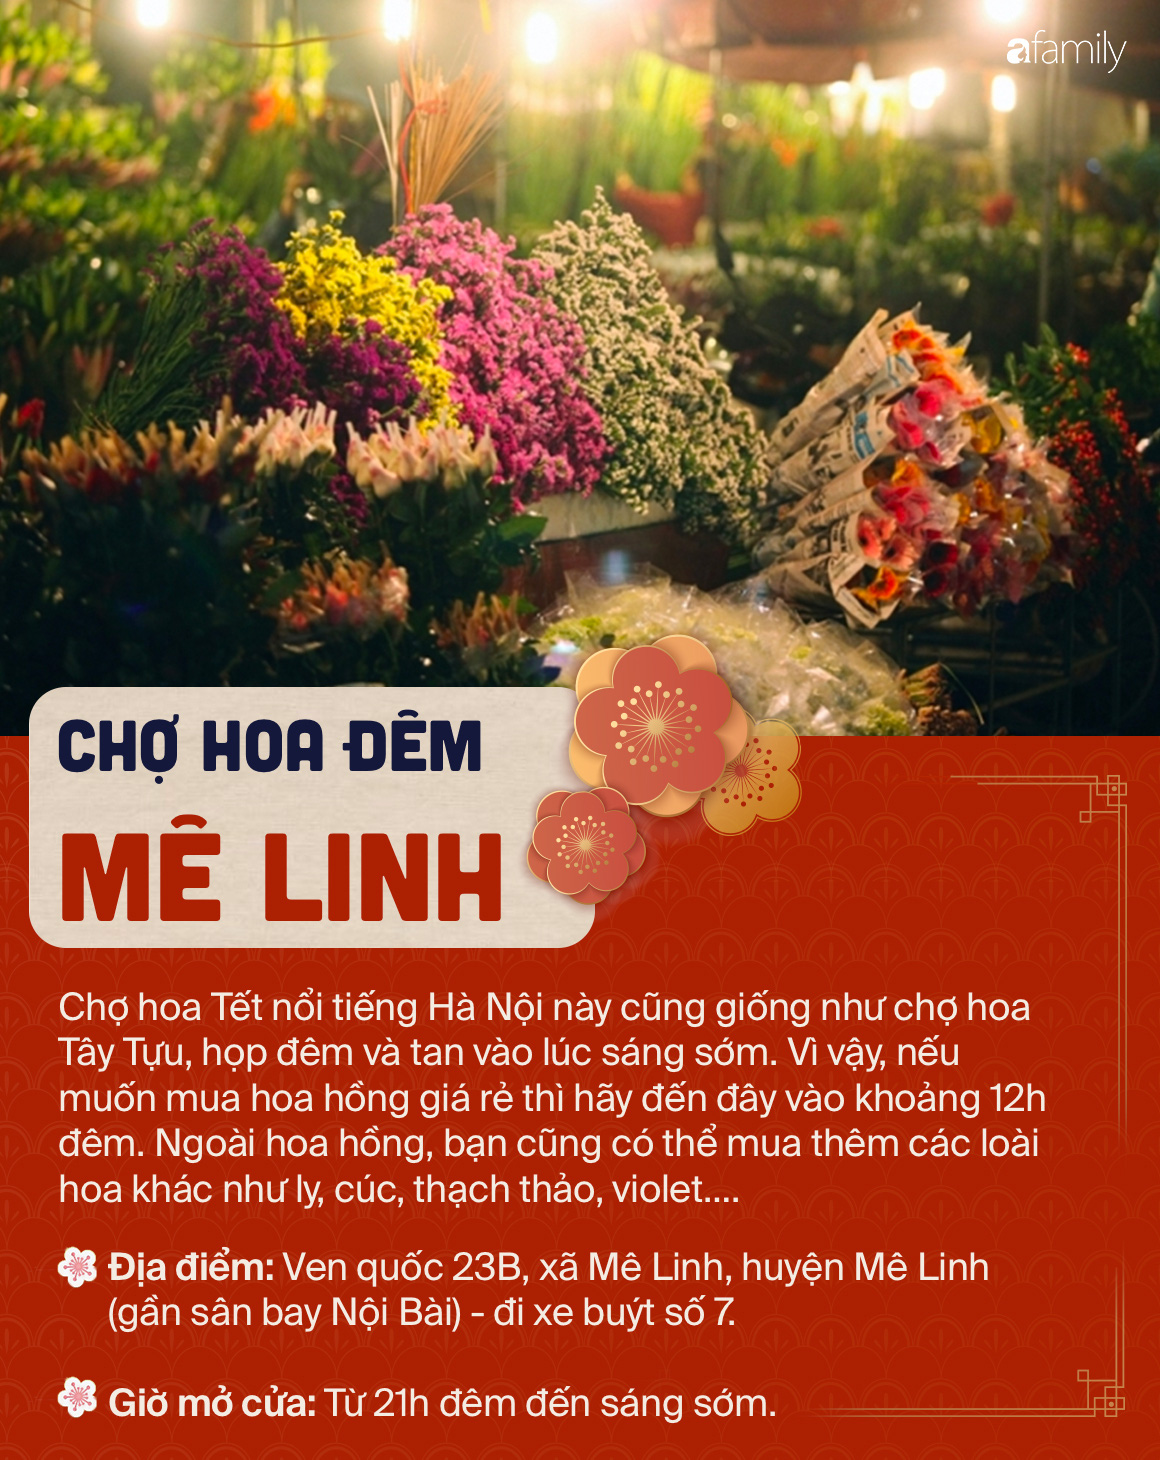 6 chợ hoa nổi tiếng xứ kinh kỳ mà bất cứ người Hà Nội cứ đến Tết là nhất định ghé mua - Ảnh 4.